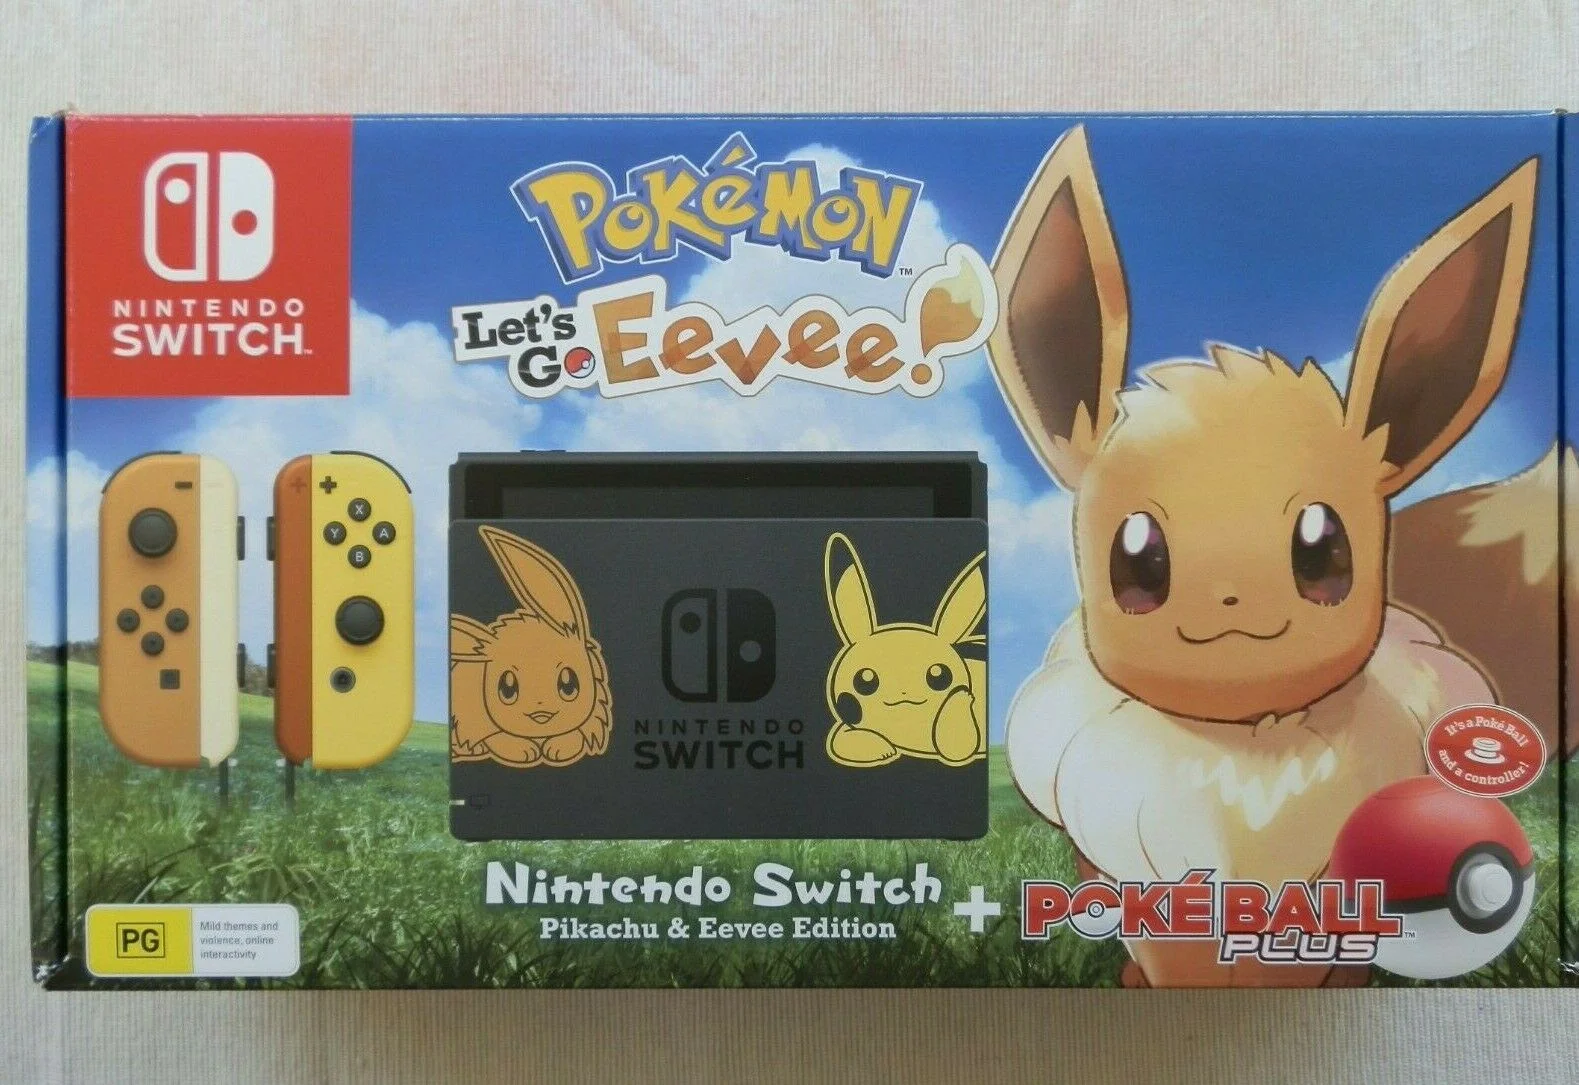  Nintendo Switch Pokemon Let's Go Eevee Console [AUS]